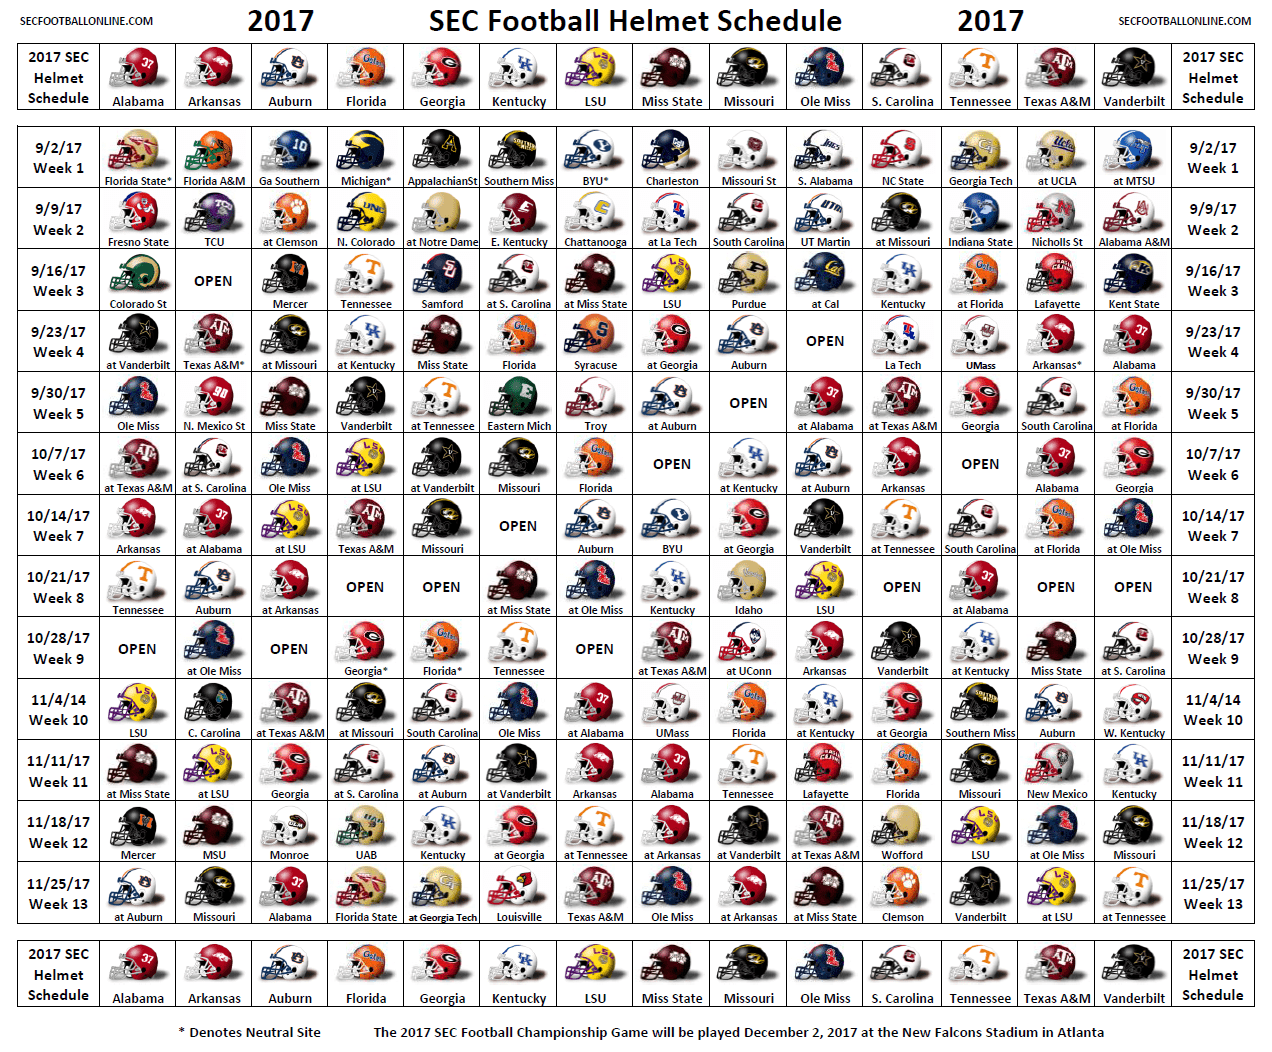 2017 SEC Helmet Schedule